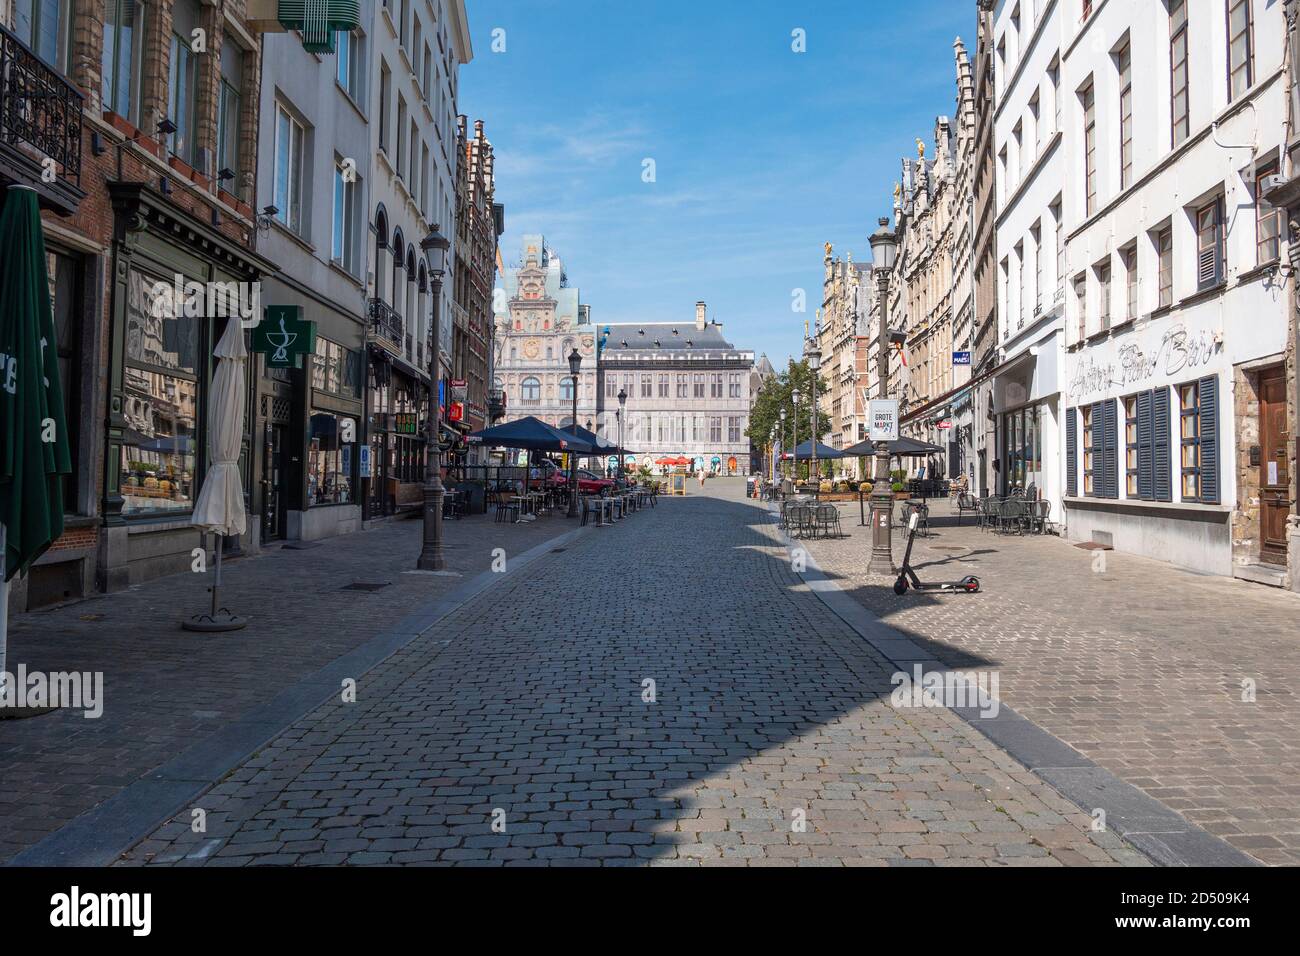 Anvers, Belgique, 16 août 2020, presque personne sur le marché principal et les terrasses vides pendant la crise corona Banque D'Images